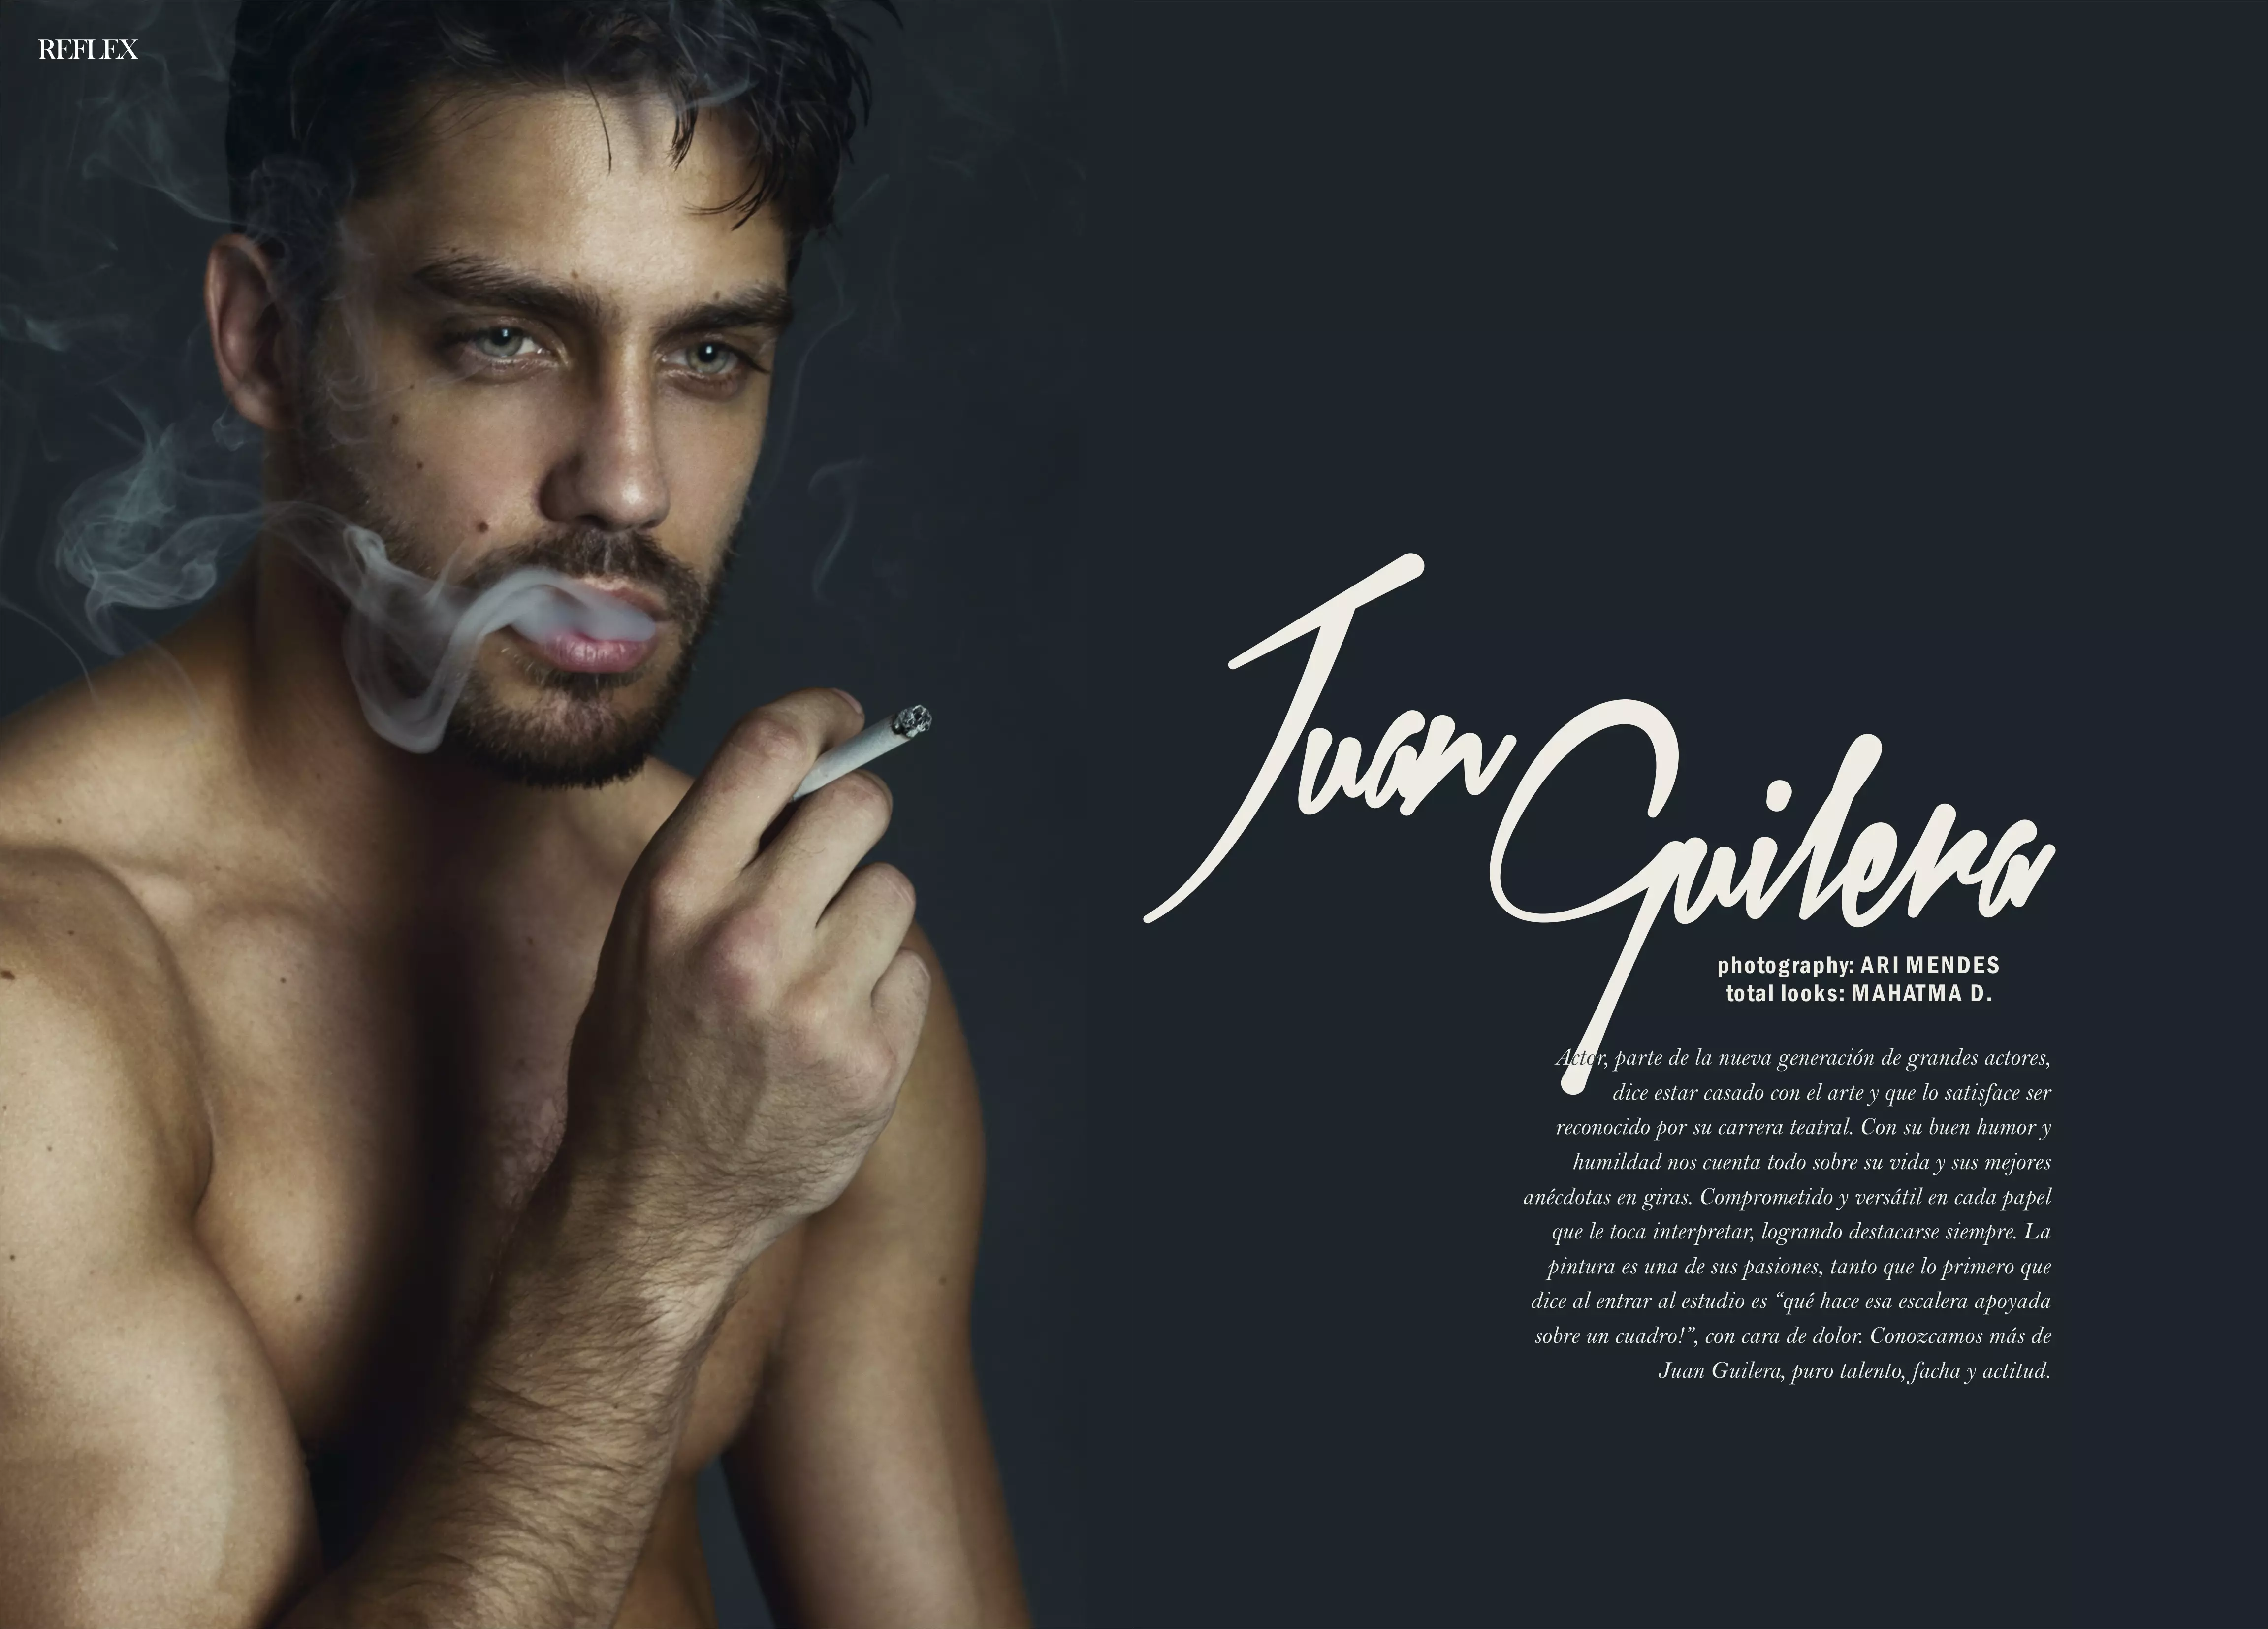 O actor e modelo Juan Guilera en EP Bookers posando para unha sesión exclusiva de Reflex Homme, edición de abril de 2015, capturado por Ari Mendes con total looks de Mahatma D.